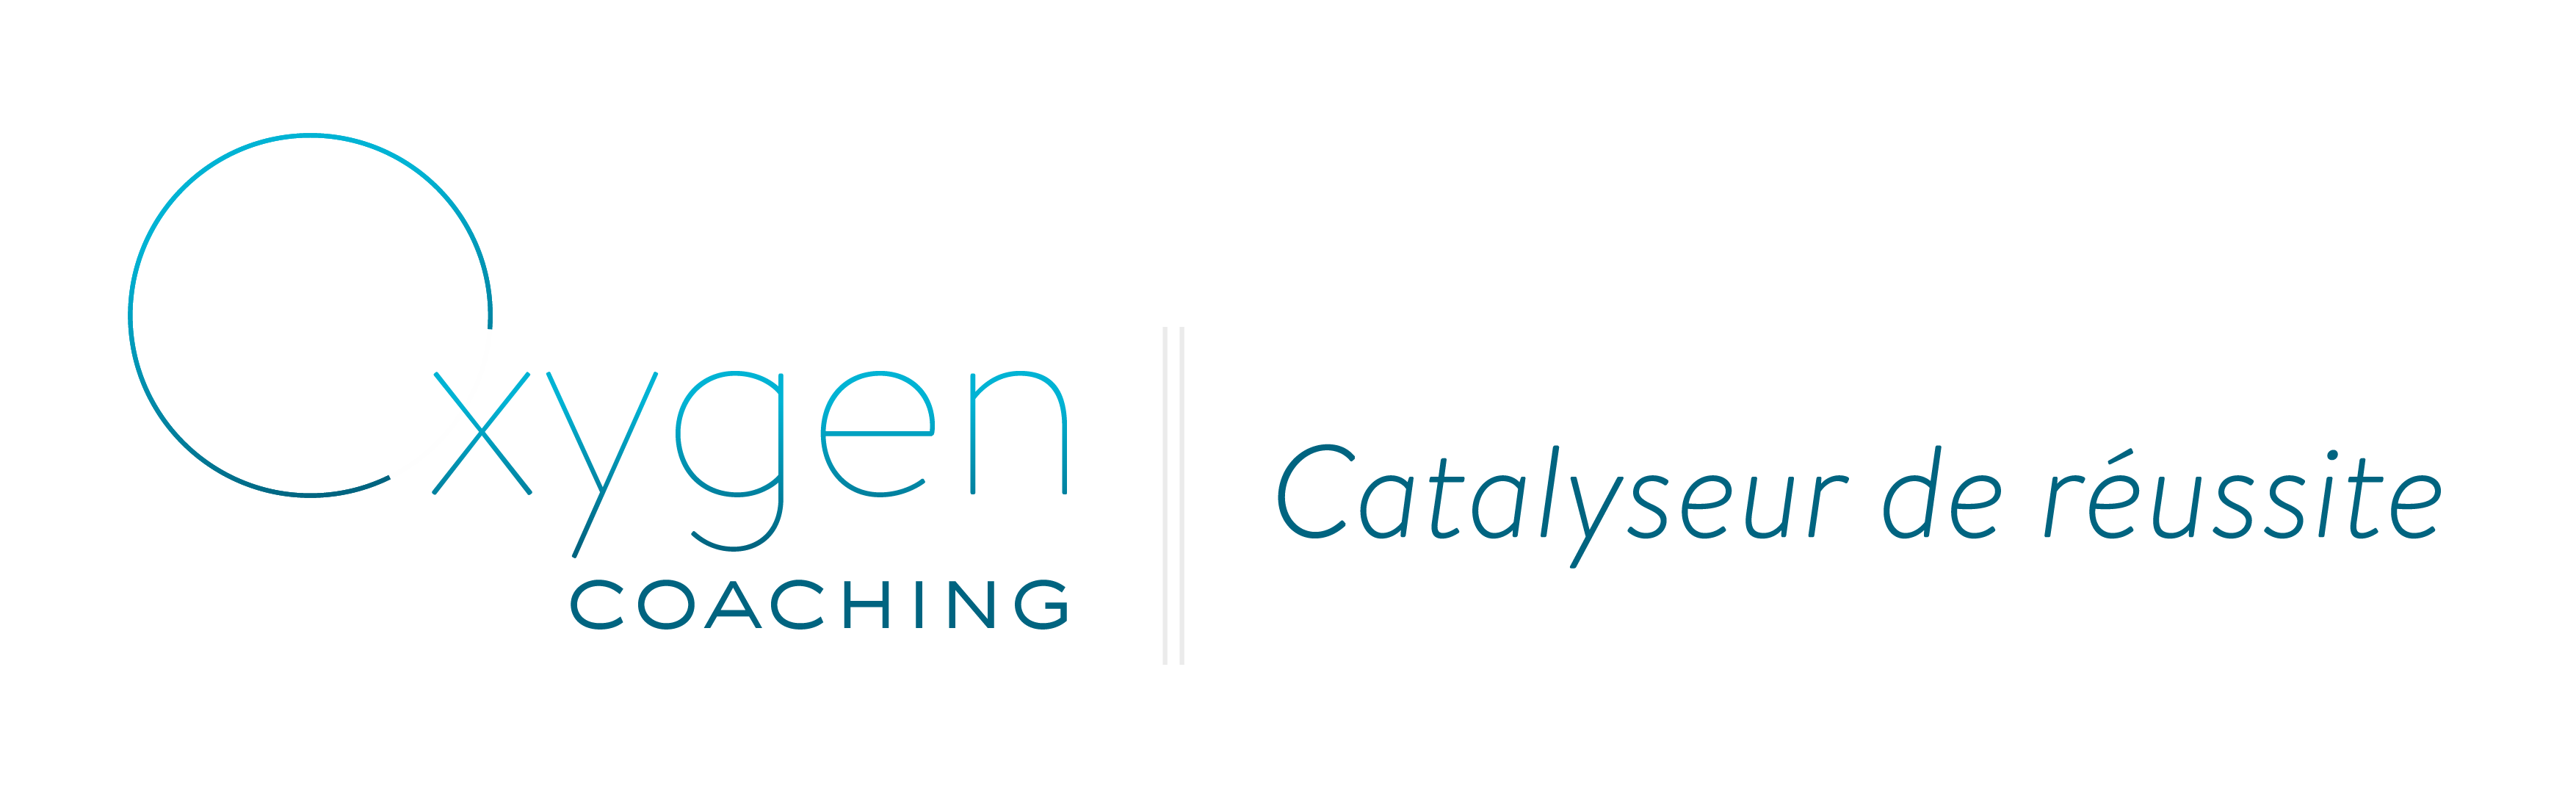 Logo Oxygen Coaching